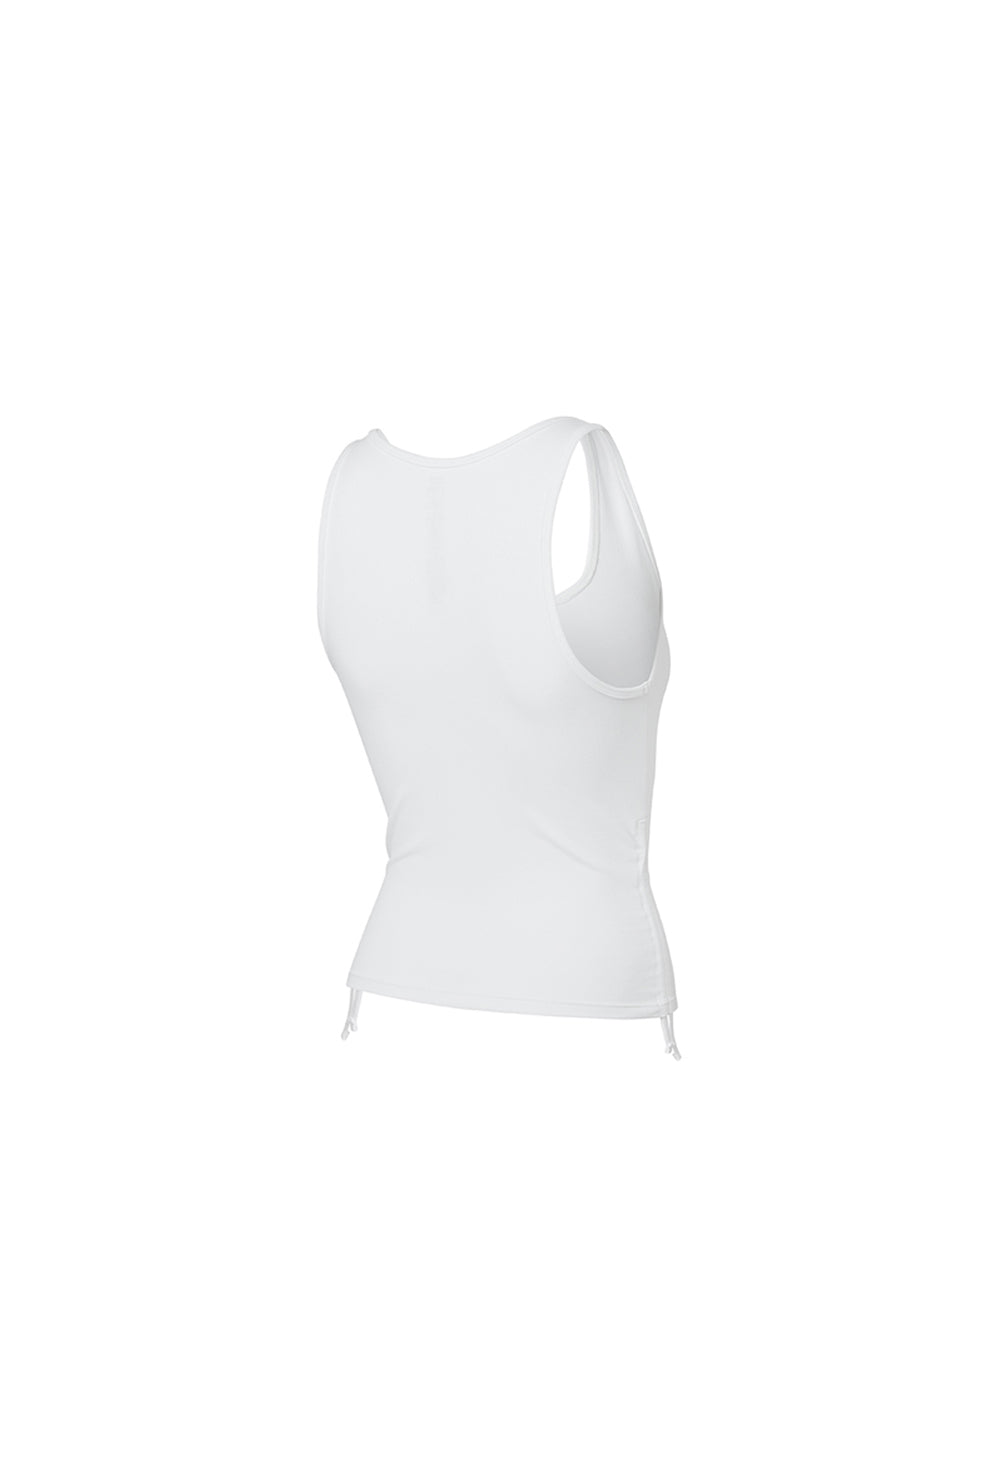 Side Shirring Sleeveless - White